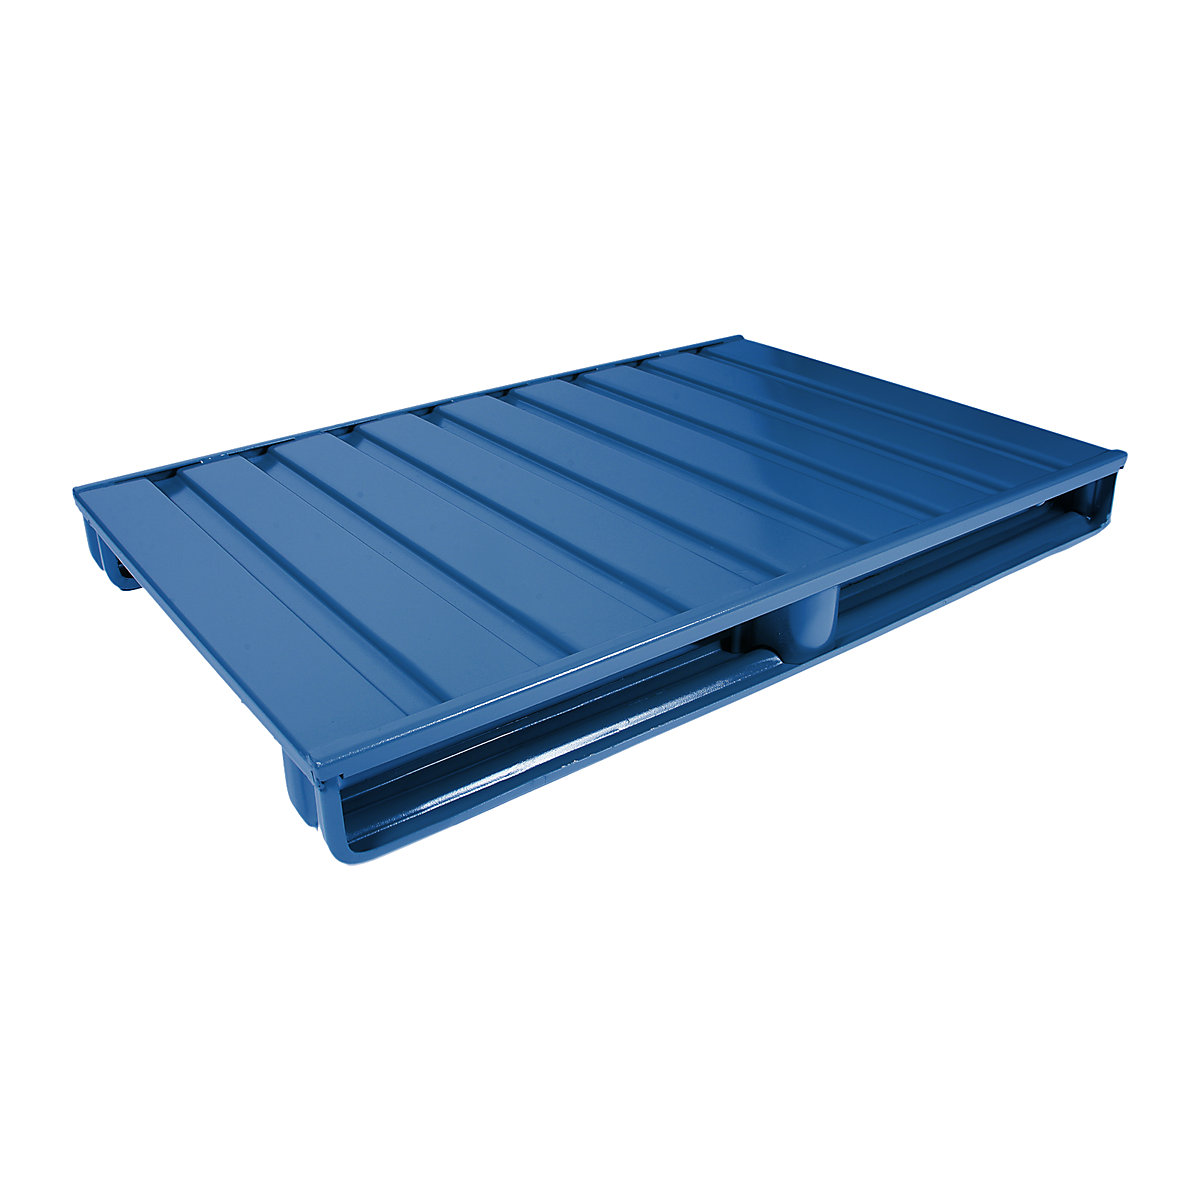 Palete plana de aço – Heson, CxL 1200 x 1000 mm, capacidade de carga 2000 kg, azul genciana-2